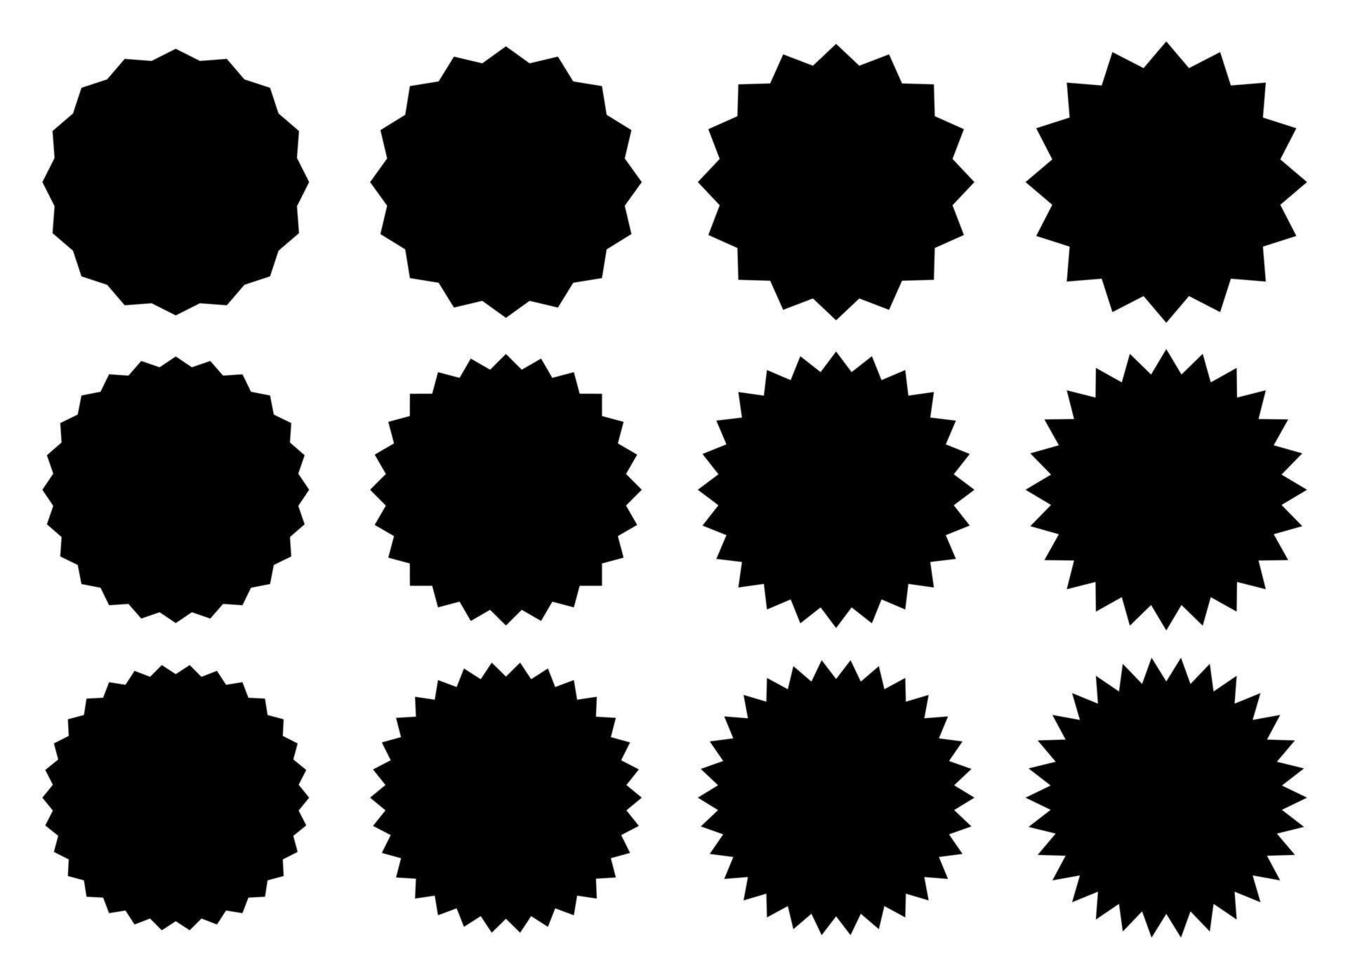 ilustración de diseño de vector de banner simple negro aislado sobre fondo blanco